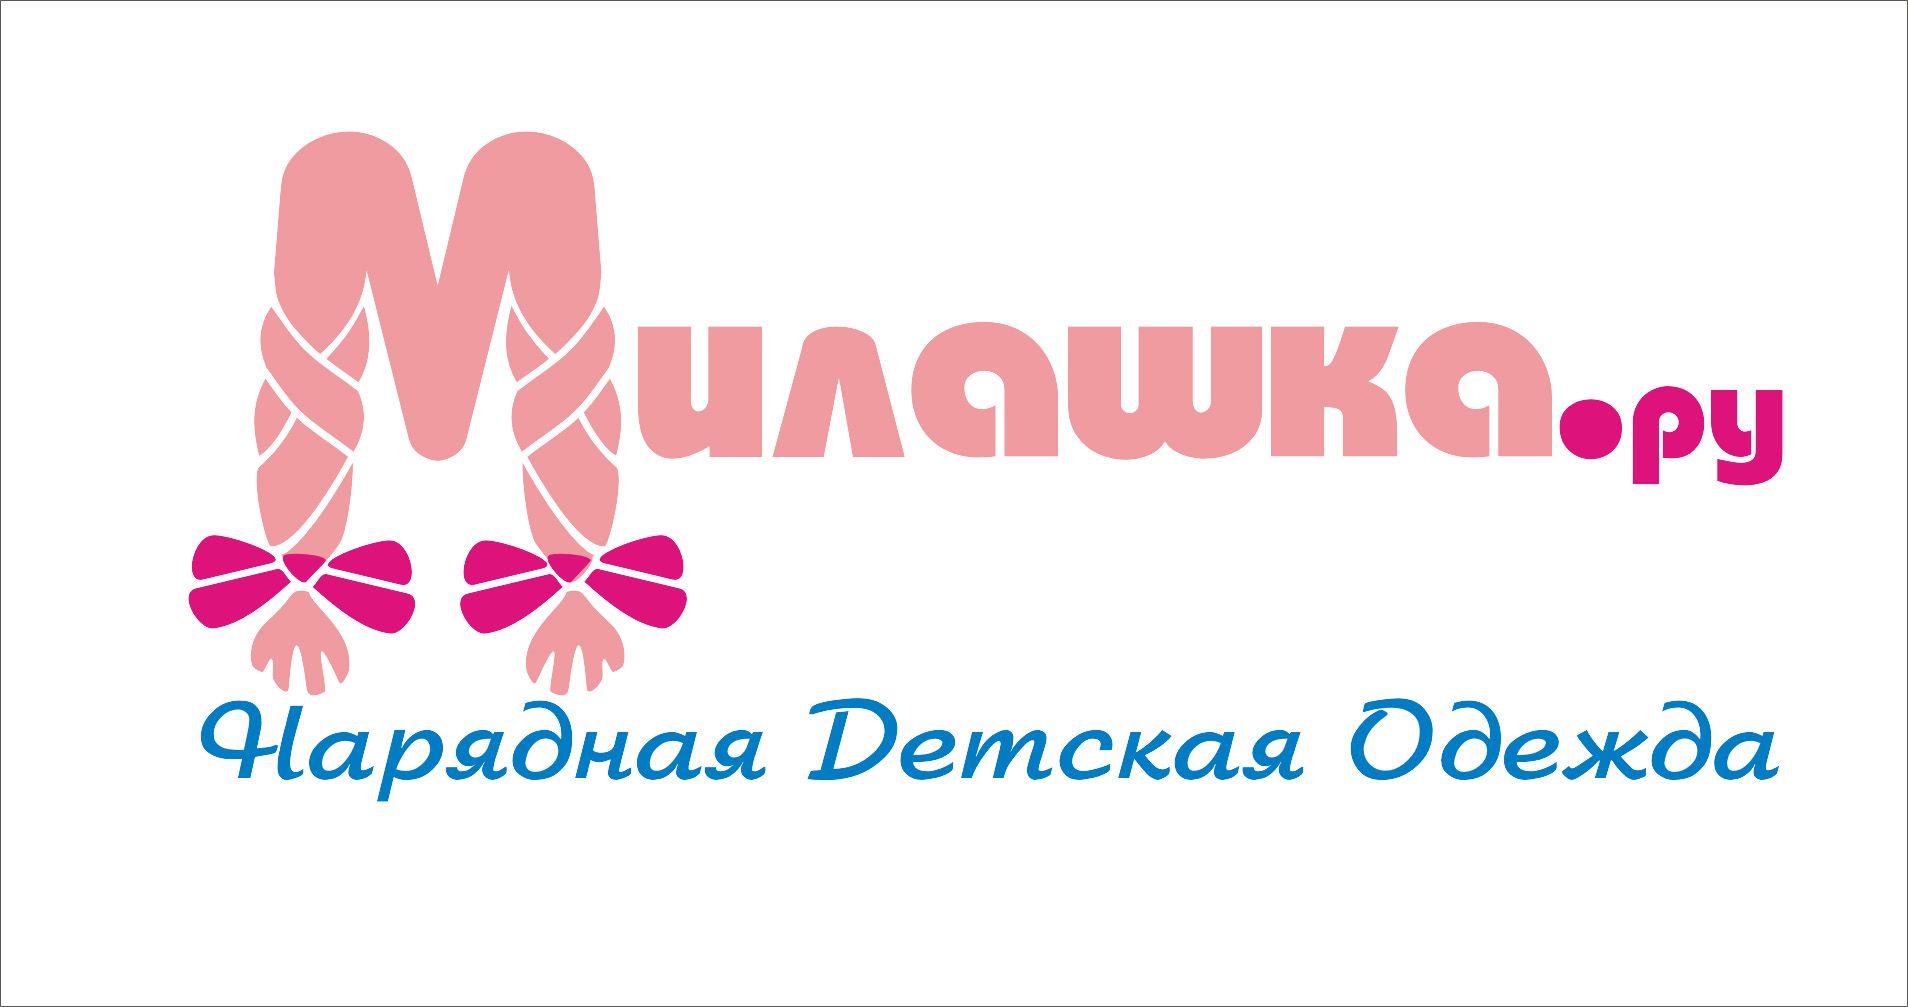 Логотип и стиль интернет-магазина Милашка.ру - дизайнер radchuk-ruslan